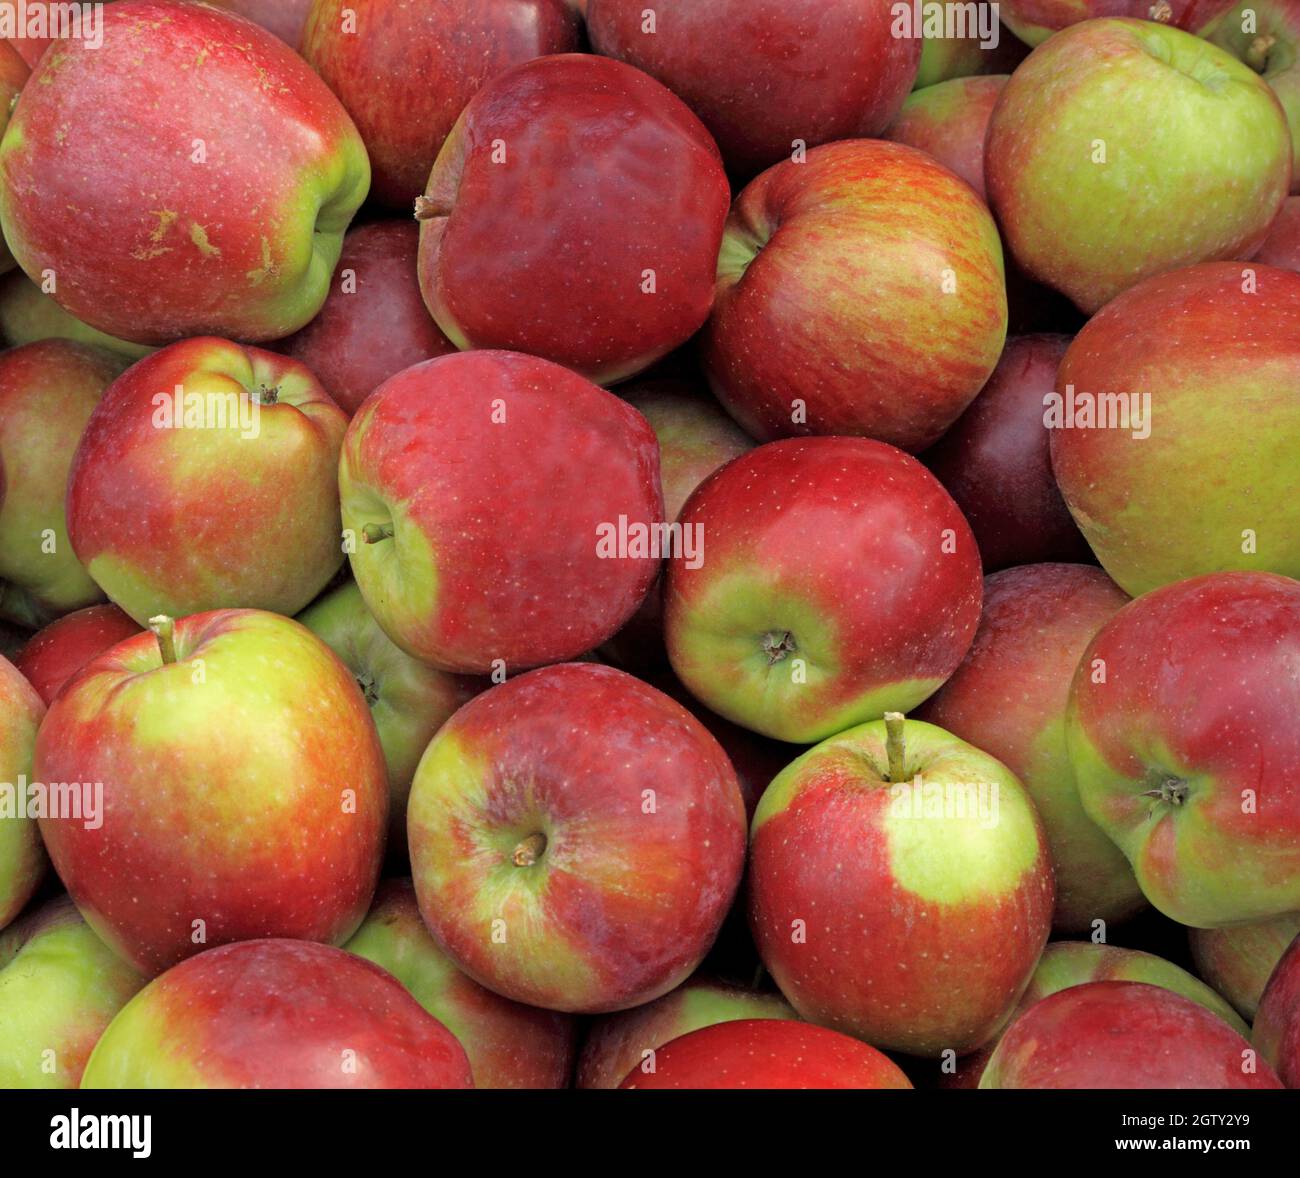 'Apple' Épicure, pommes, manger des pommes, Malus domestica, la saine alimentation Banque D'Images